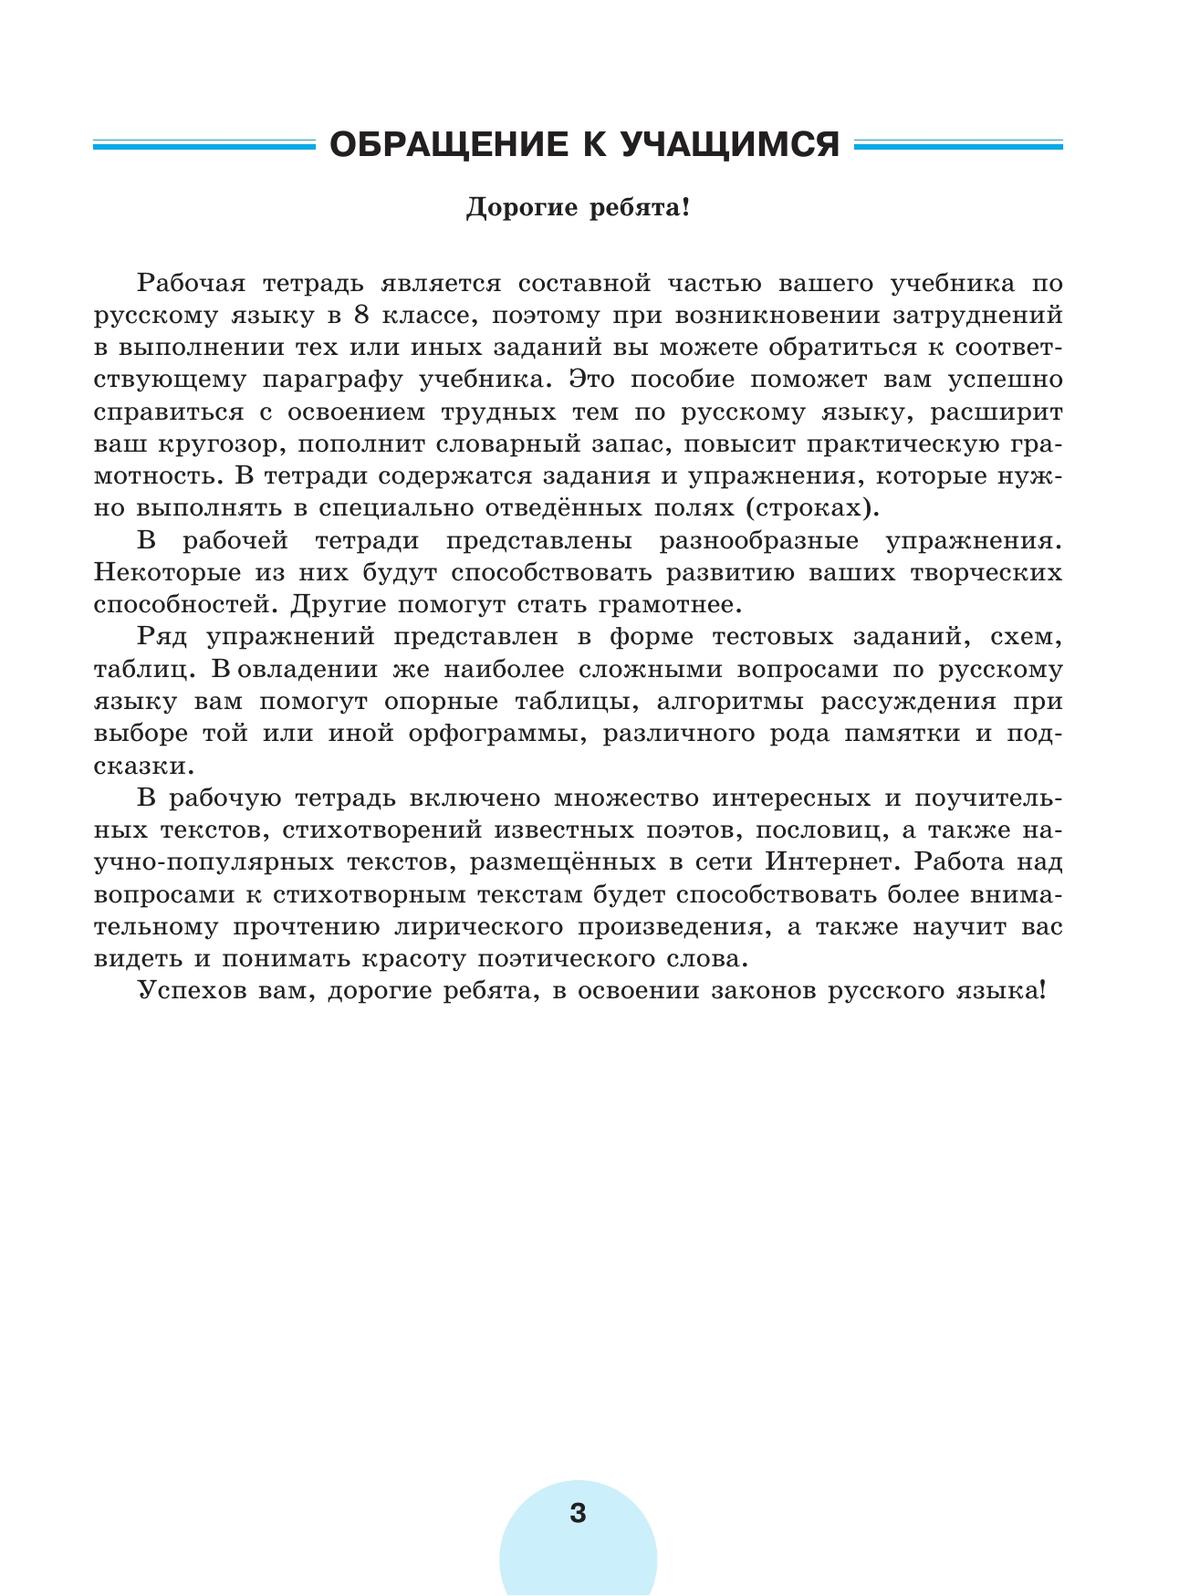 Русский язык. Рабочая тетрадь. 8 класс. В 2 ч. Часть 1 7